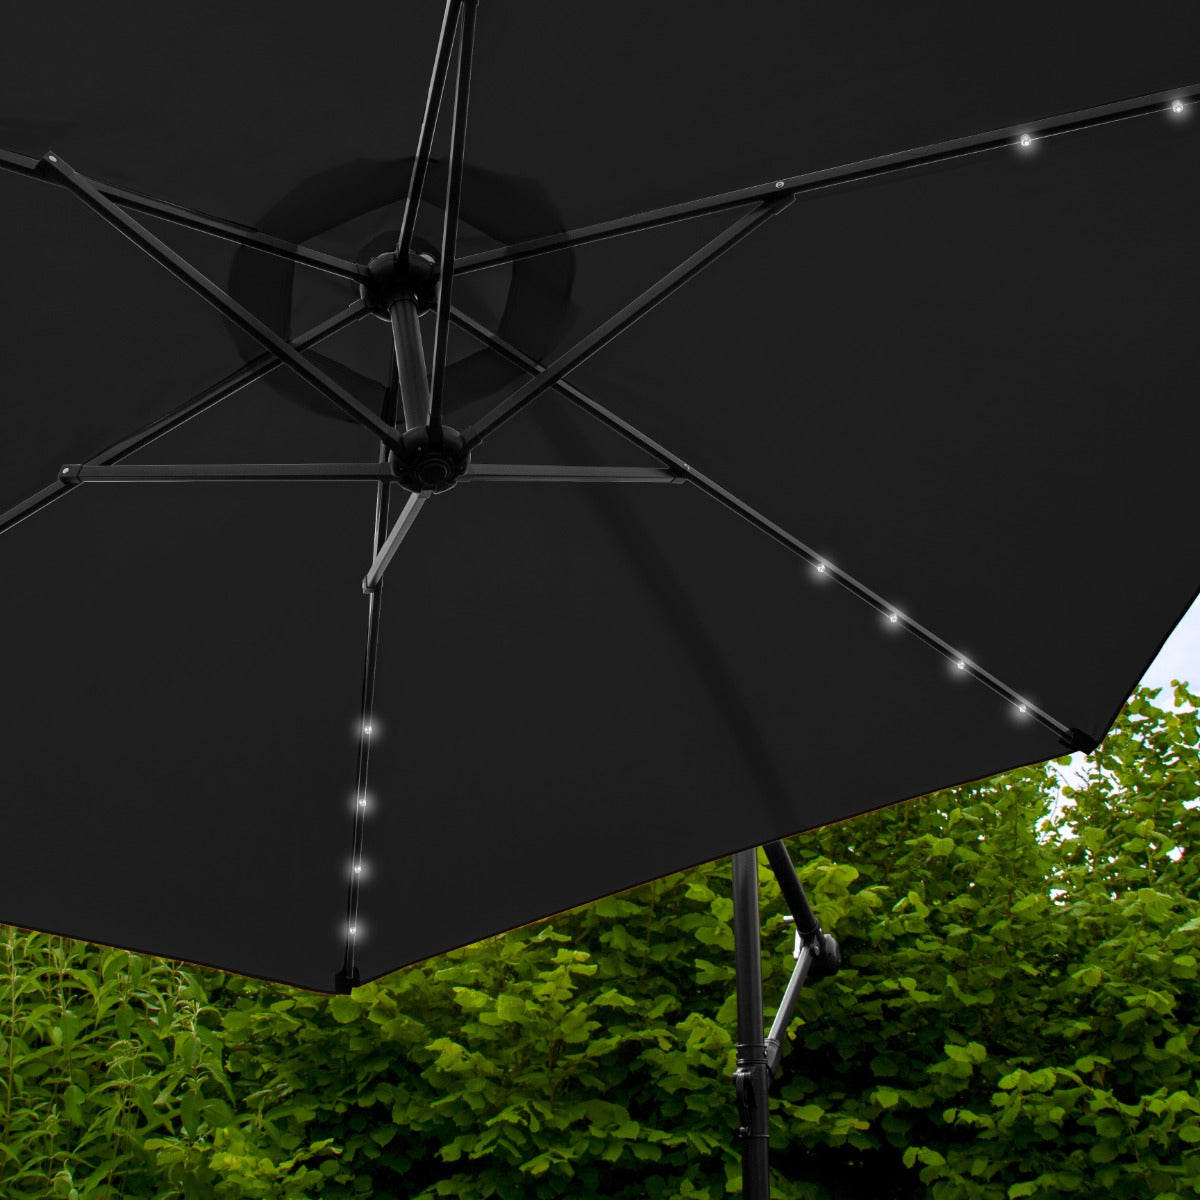 Black 3m LED Cantilever Parasol With Plain Base